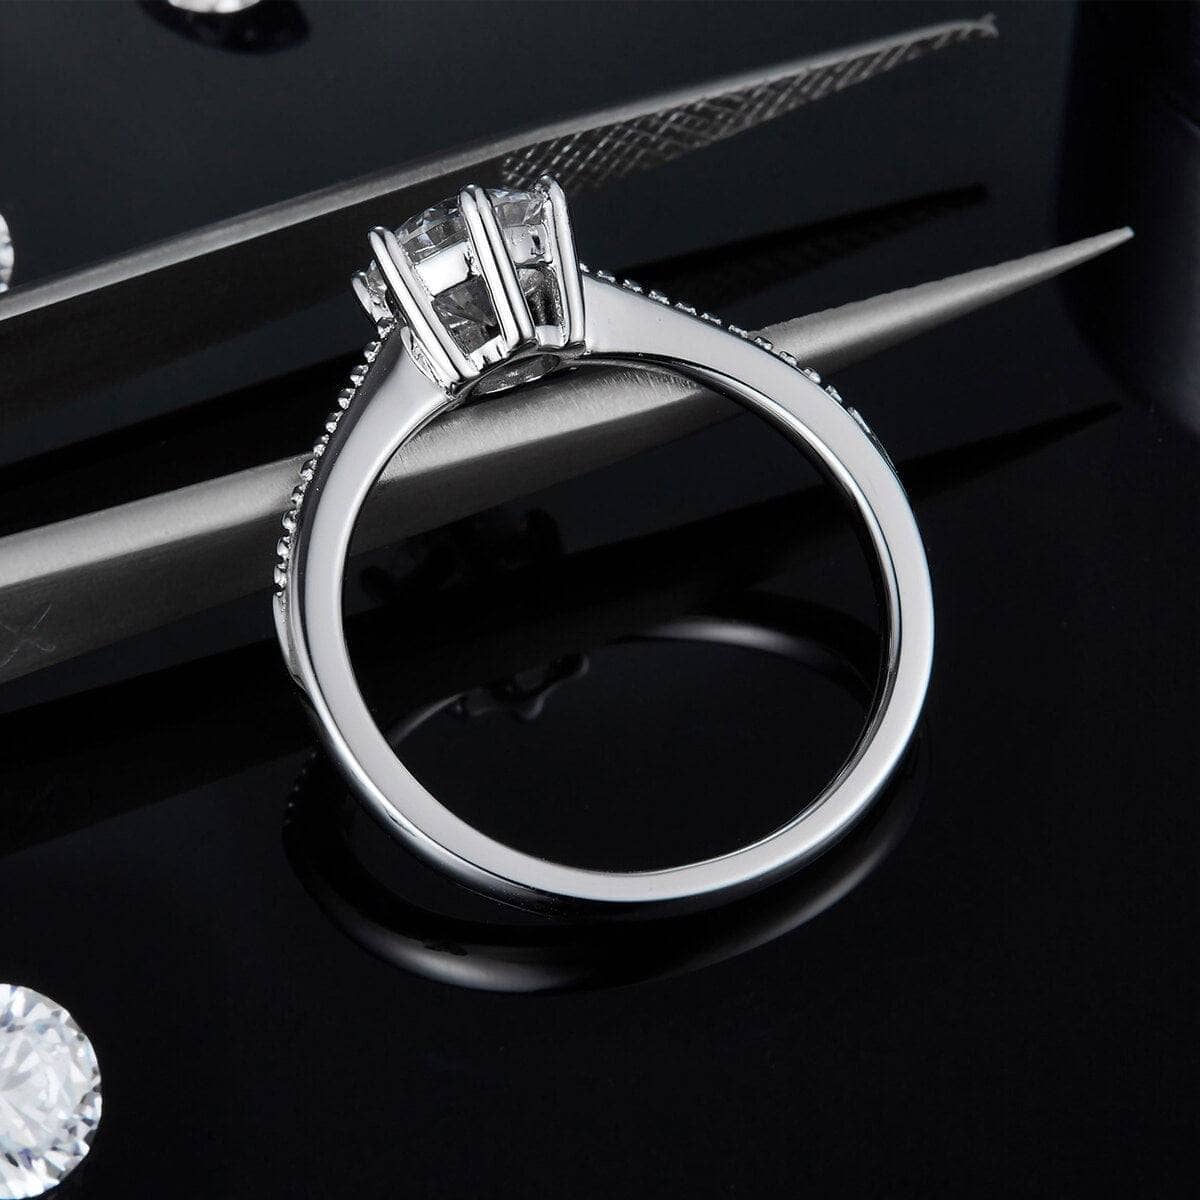 1Ct VVS1 Moissanite Diamond Promise Ring-Black Diamonds New York